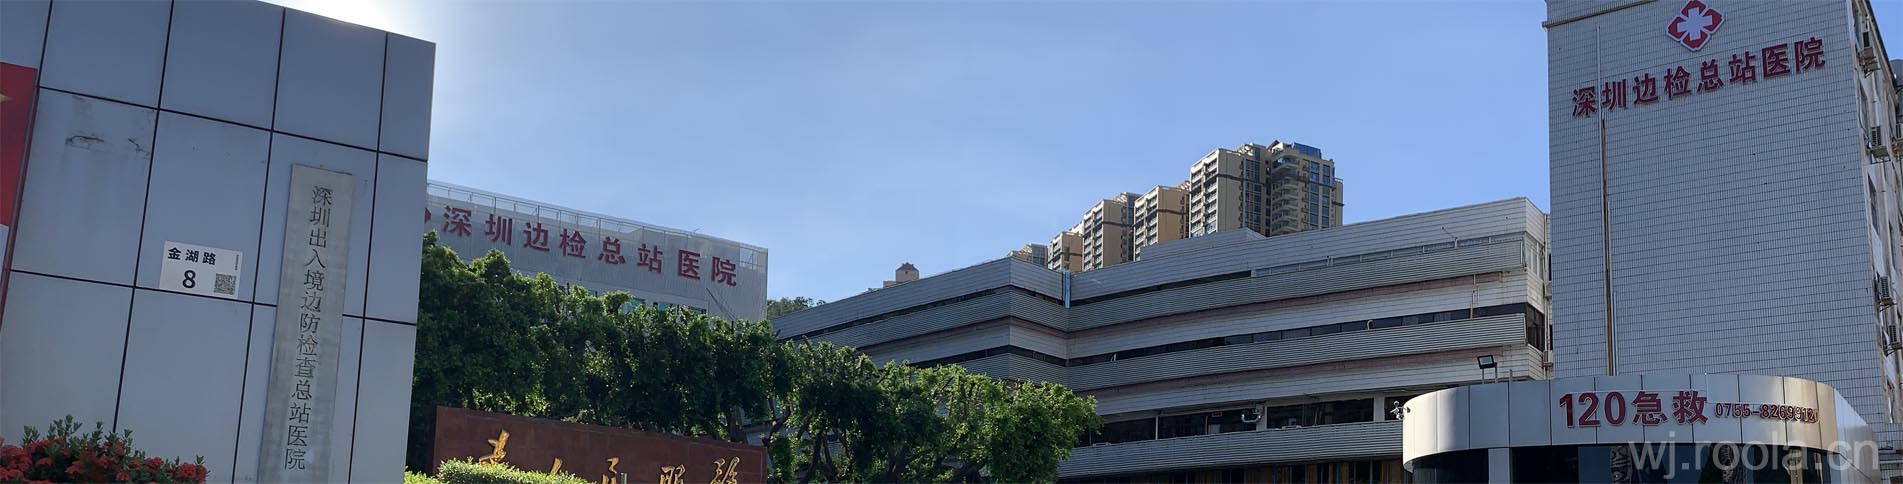 深圳出入境边防检查总站医院门口大楼照片